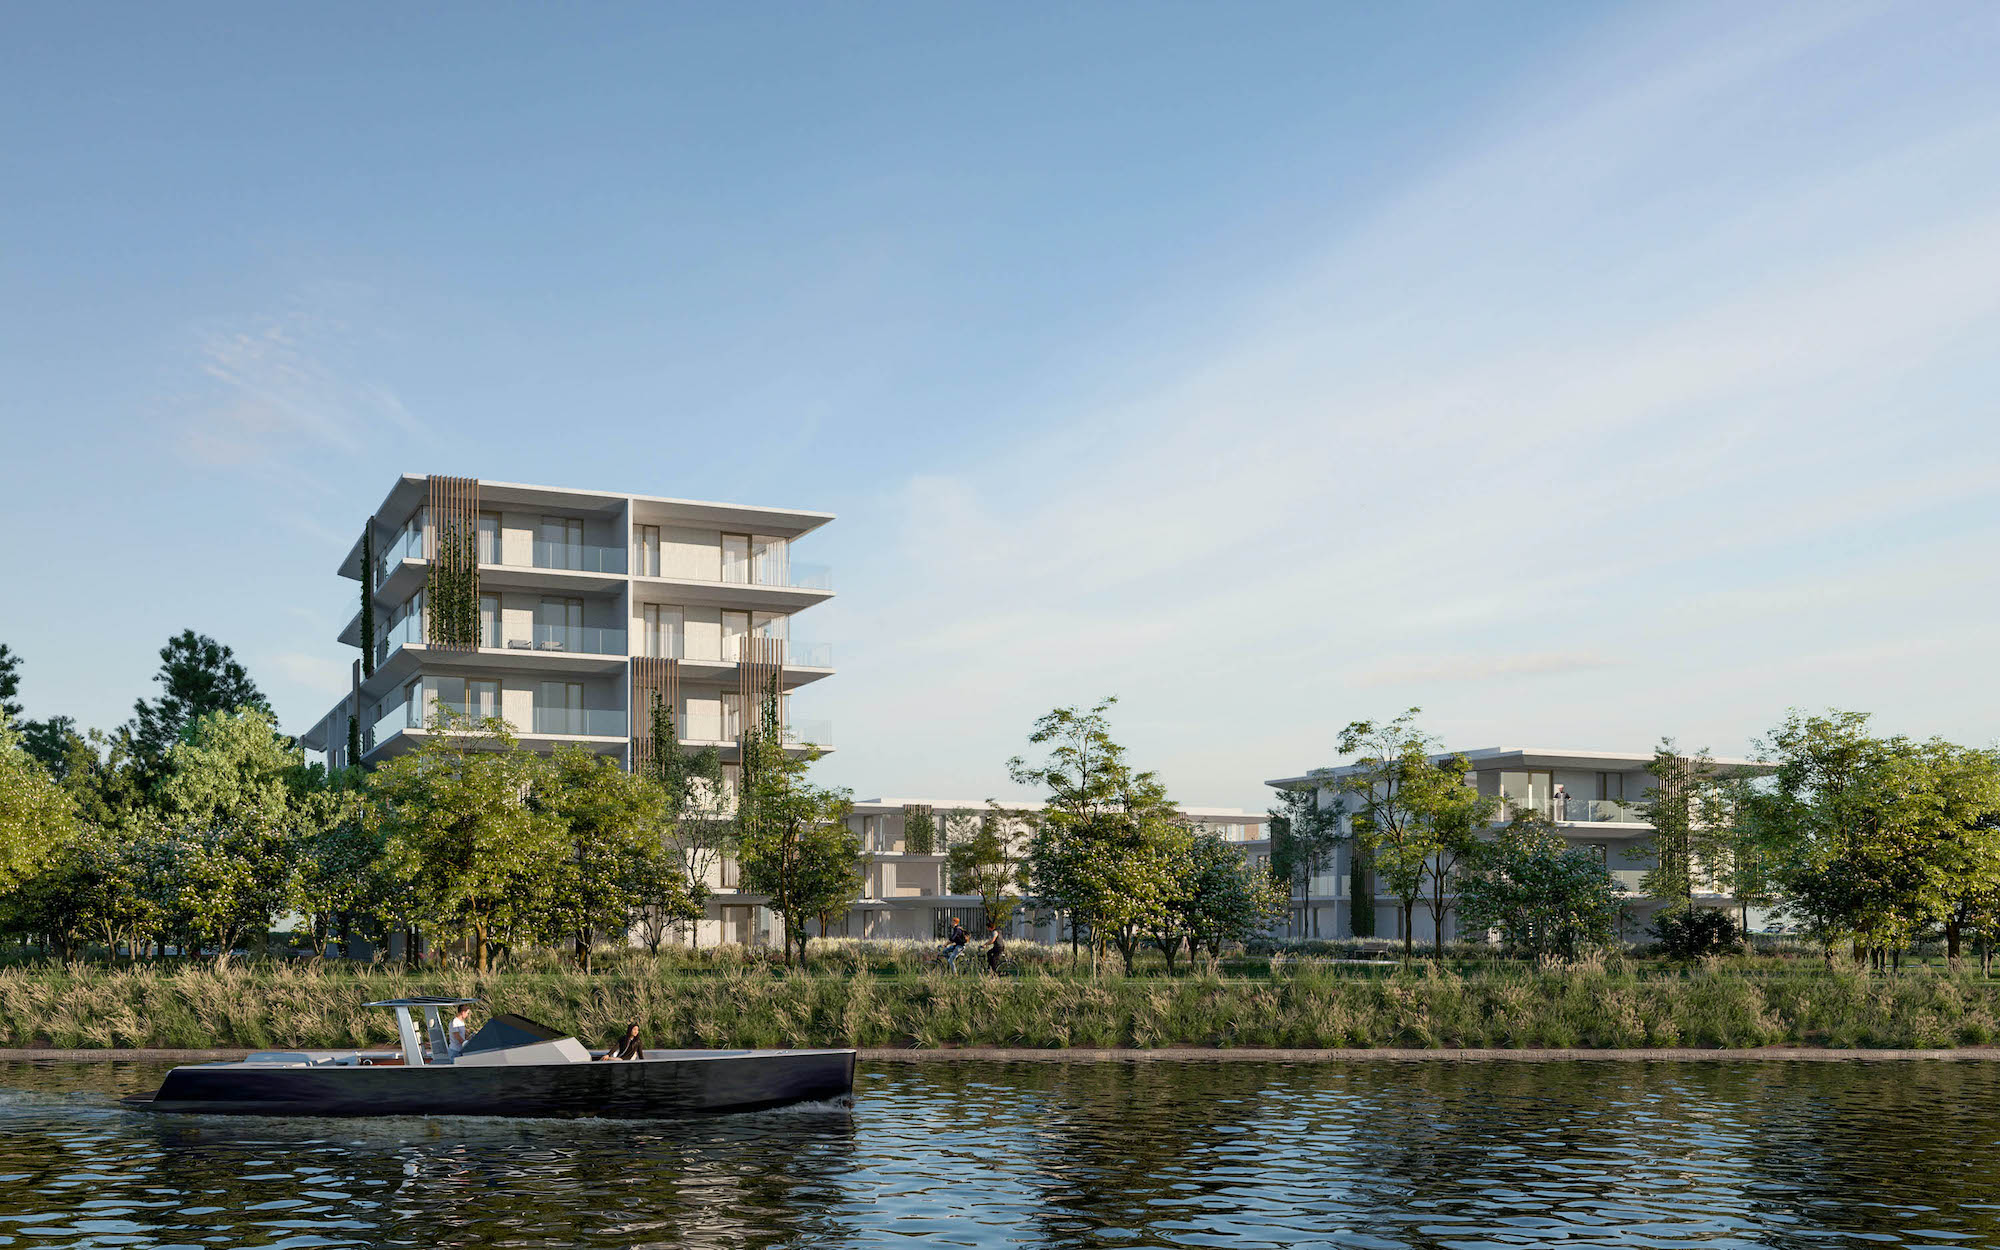 Waterlinie woonproject Neerpelt wonen aan het water passantenhaven renders haven kanaal